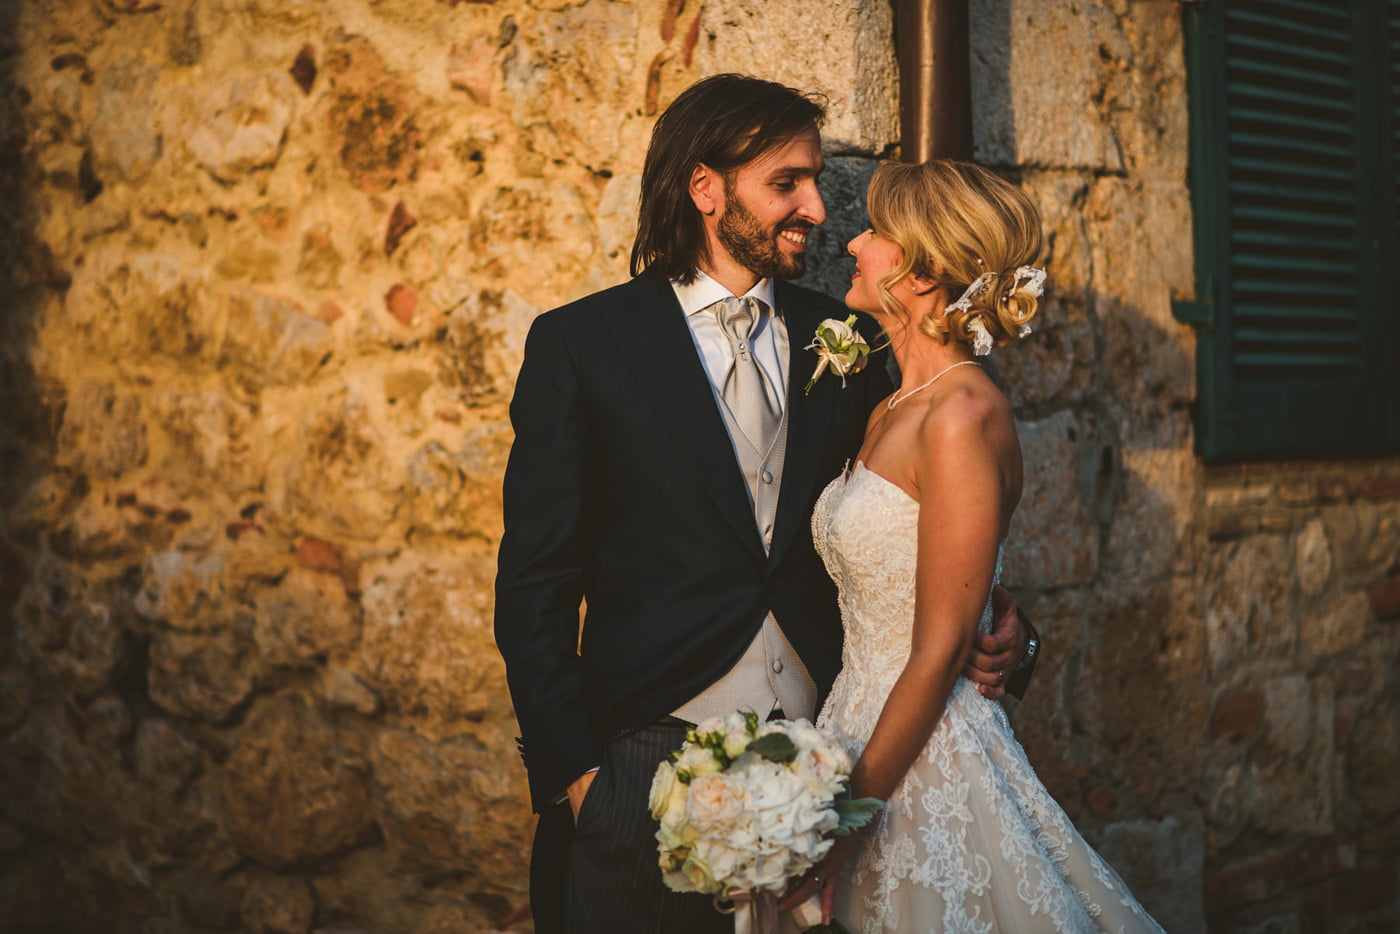 Andrea & Francesca | Wedding at Borgo San Luigi by Federico Pannacci 70